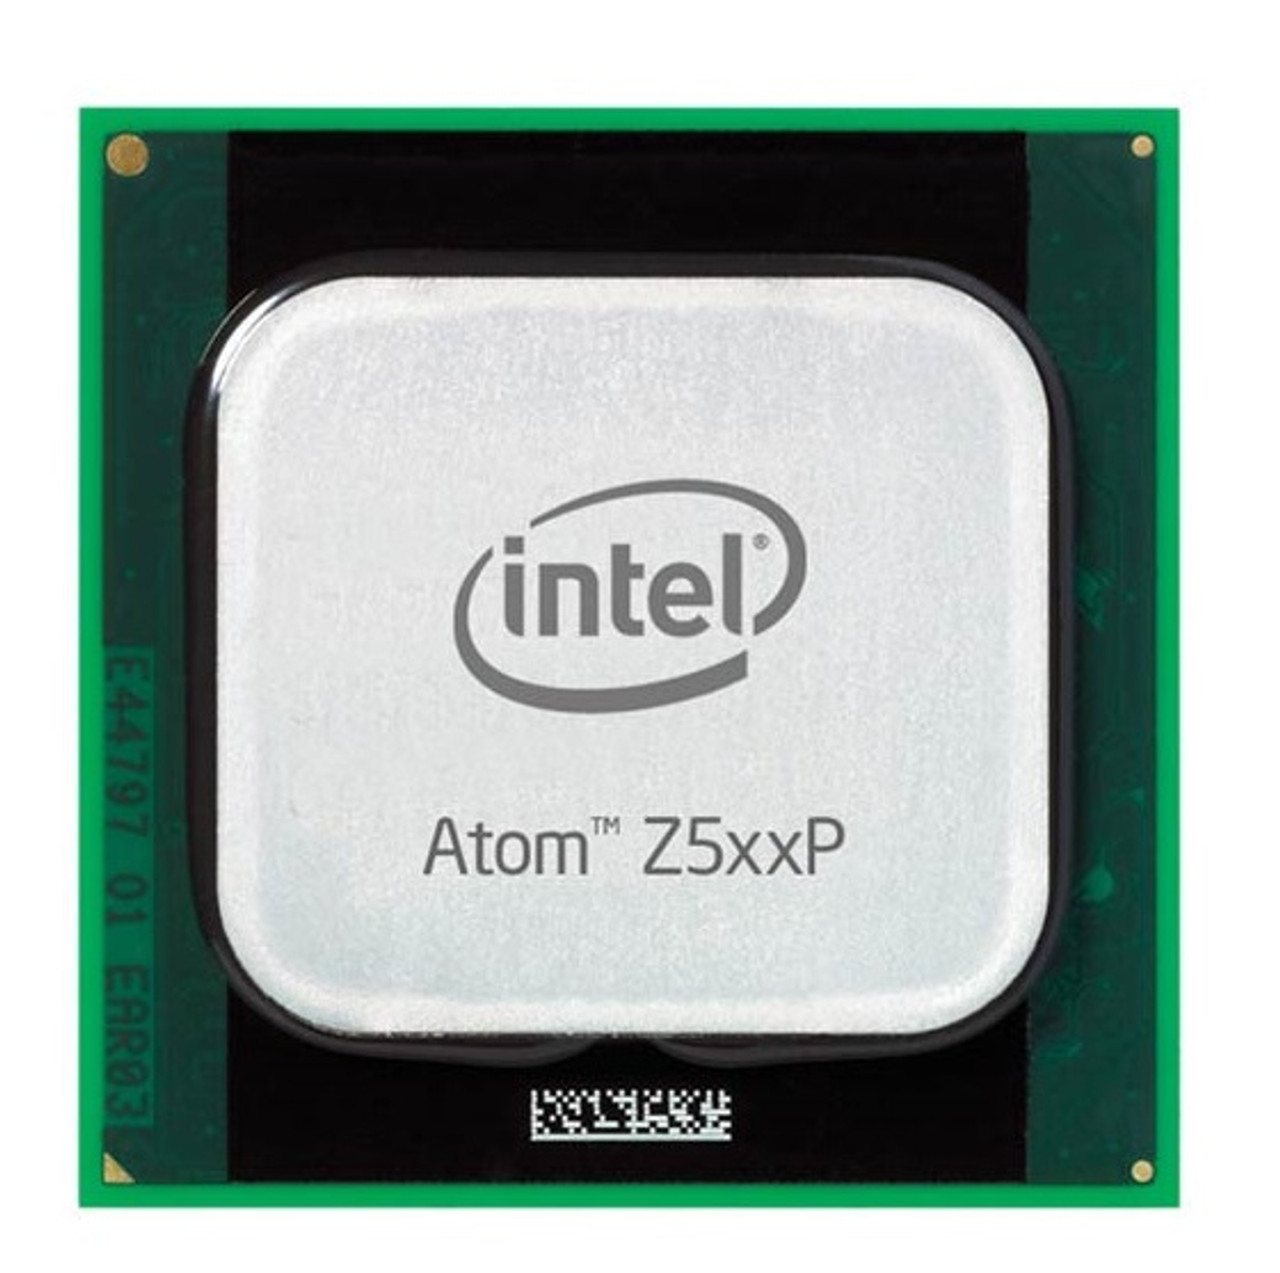 N470 - Intel Atom N470 1.83GHz 2.50GT/s DMI 512KB L2 Cache Processor